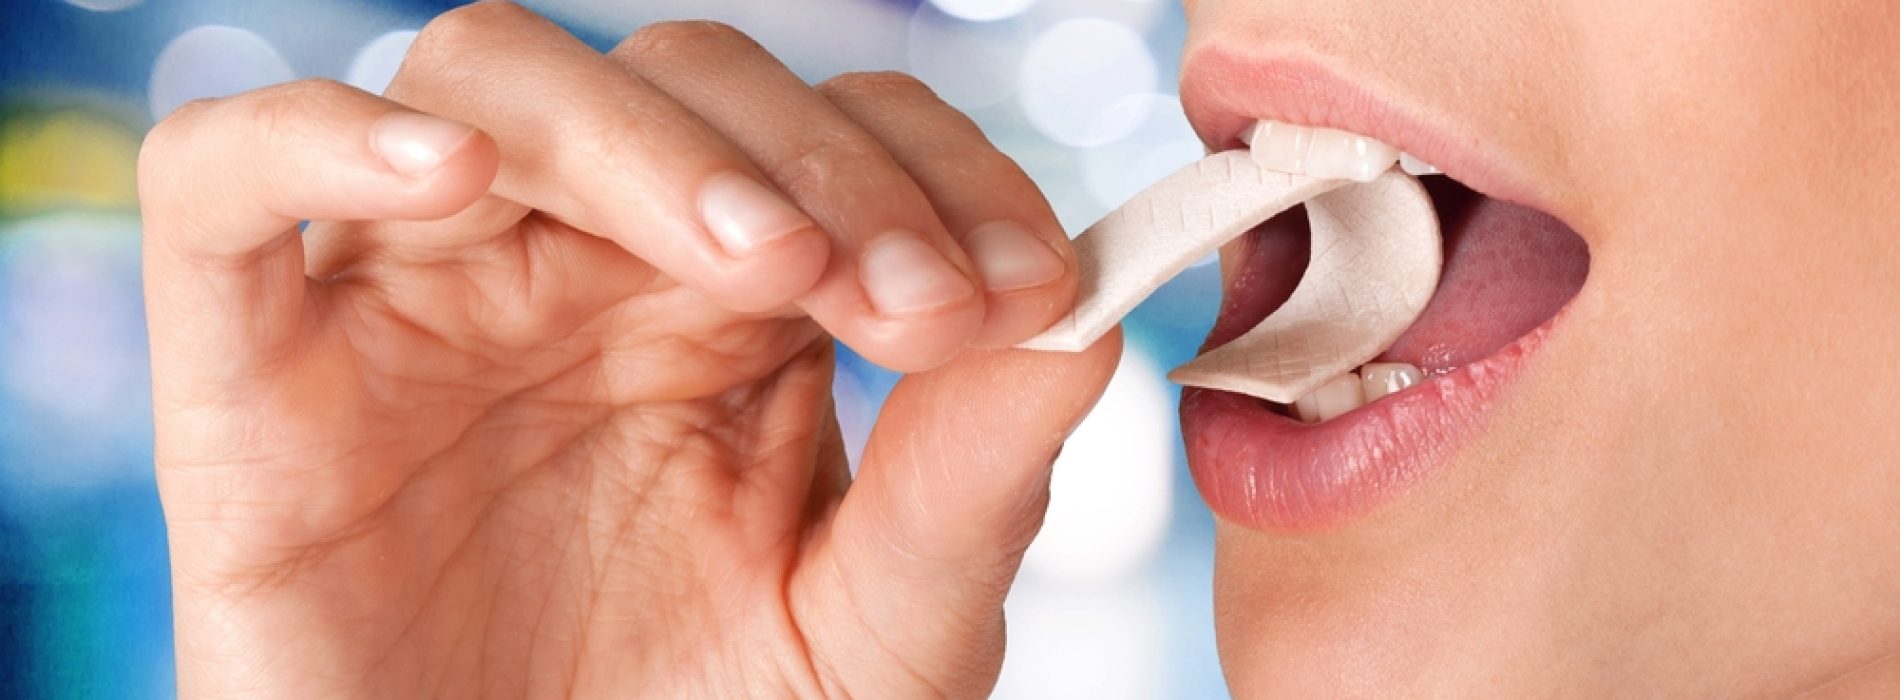 Kauwen op eigen risico: ontdek de SCHOKKENDE waarheid over kankerverwekkende chemicaliën in kauwgom